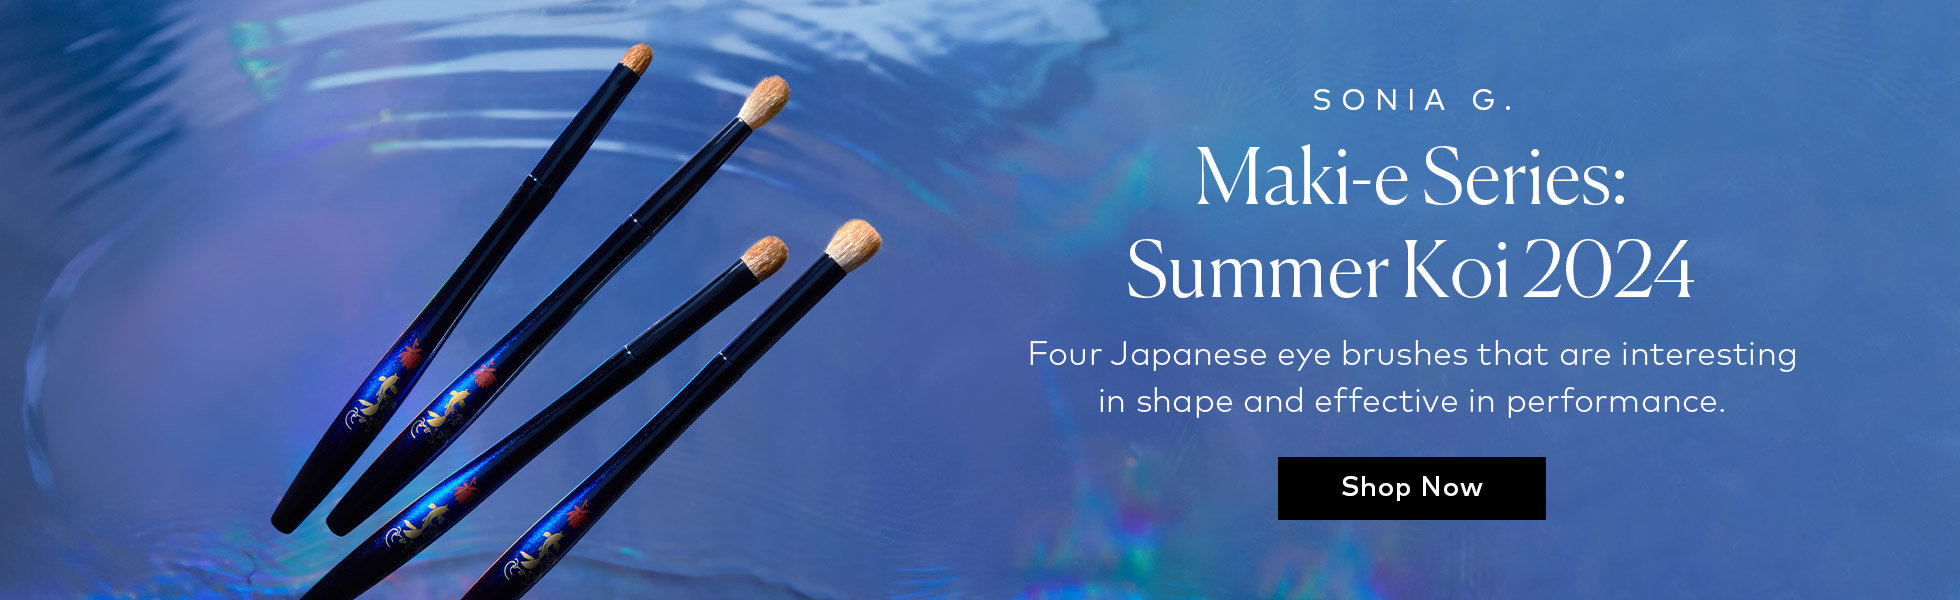 Sonia G. Maki-e Series: Summer Koi 2024